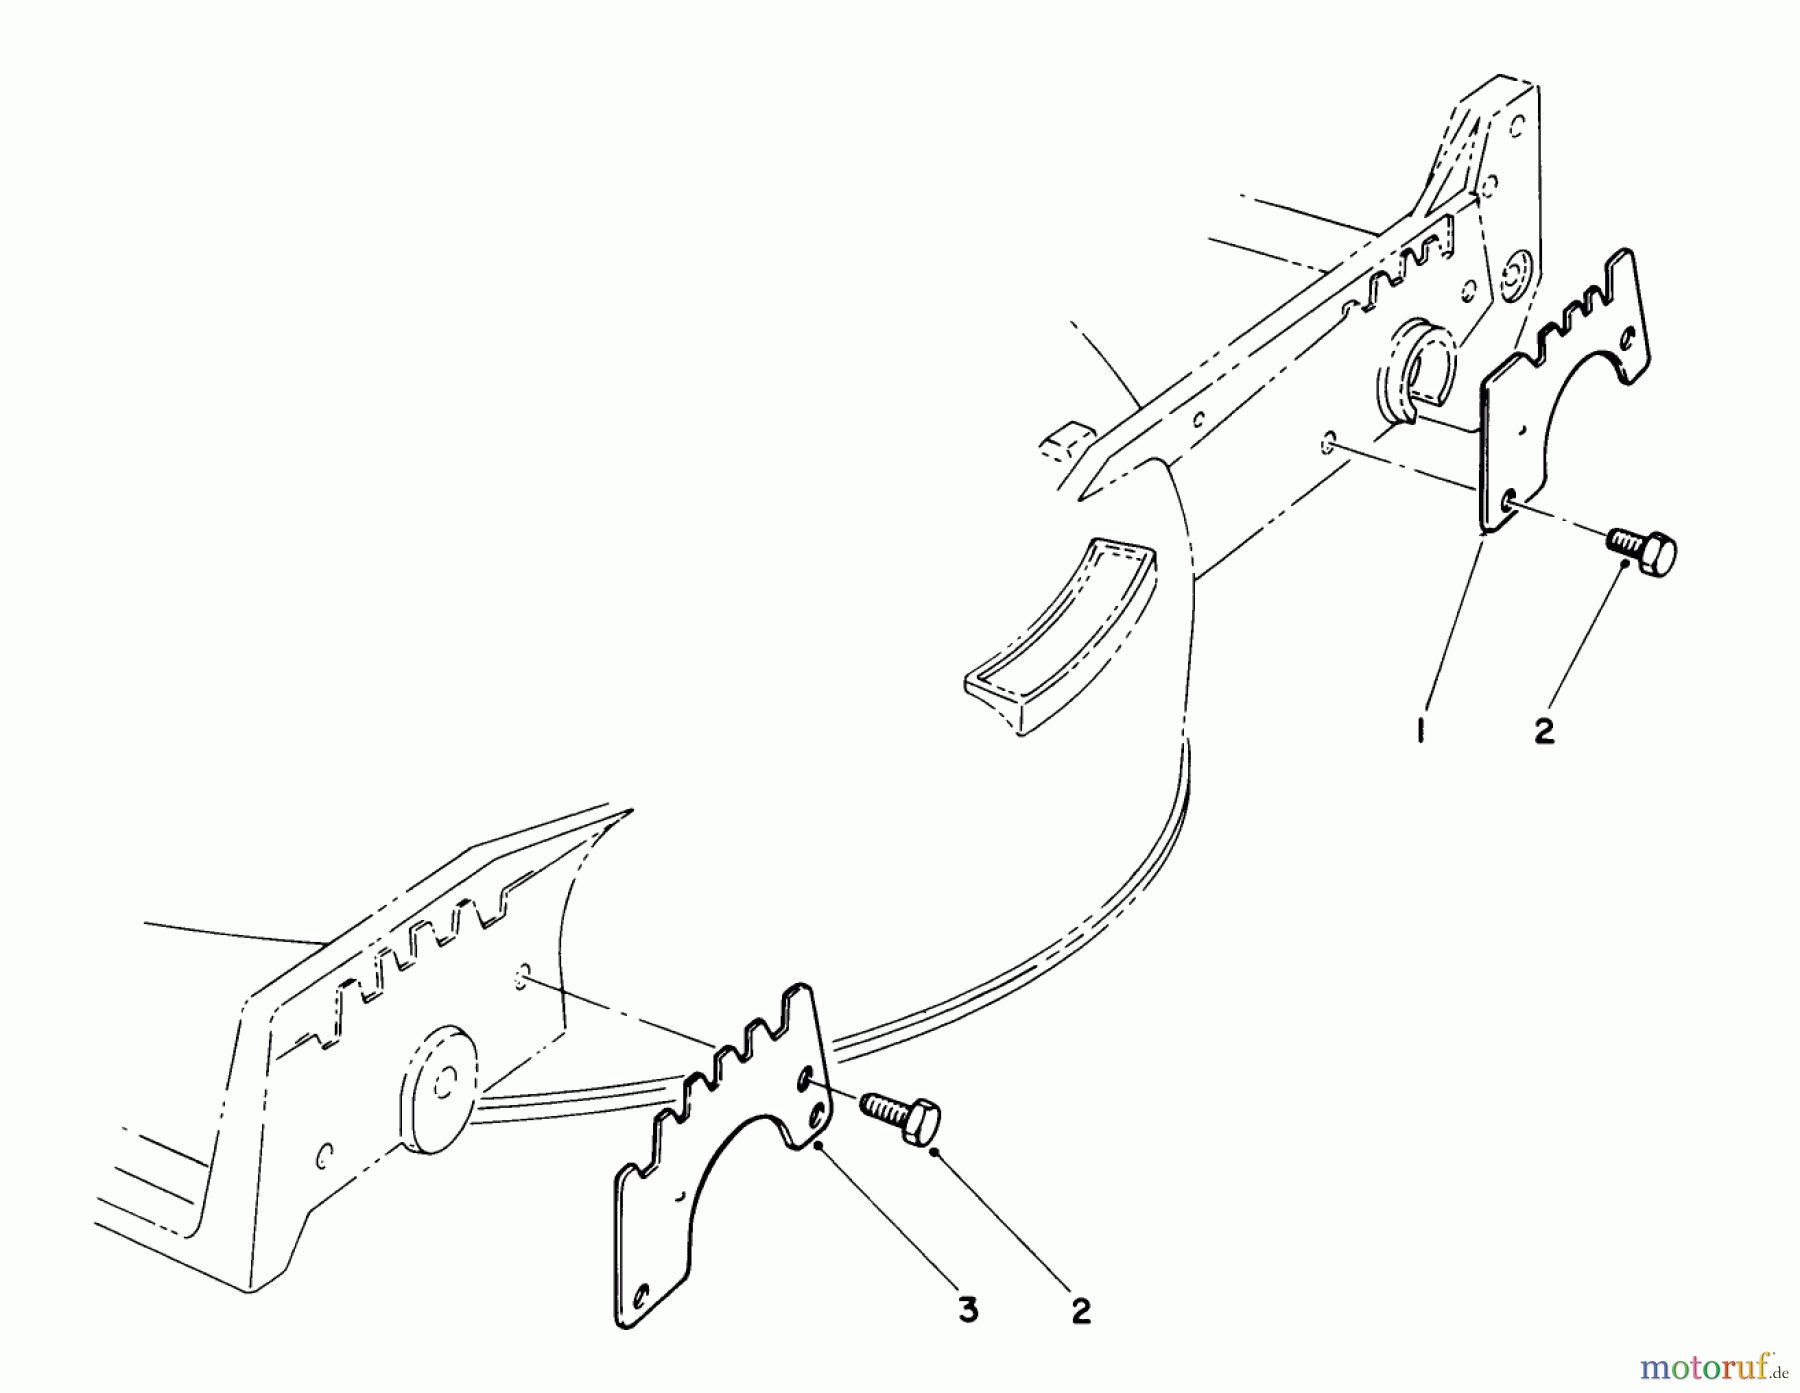  Toro Neu Mowers, Walk-Behind Seite 1 20692 - Toro Lawnmower, 1990 (0000001-0999999) WEAR PLATE KIT NO. 49-4080 (OPTIONAL)